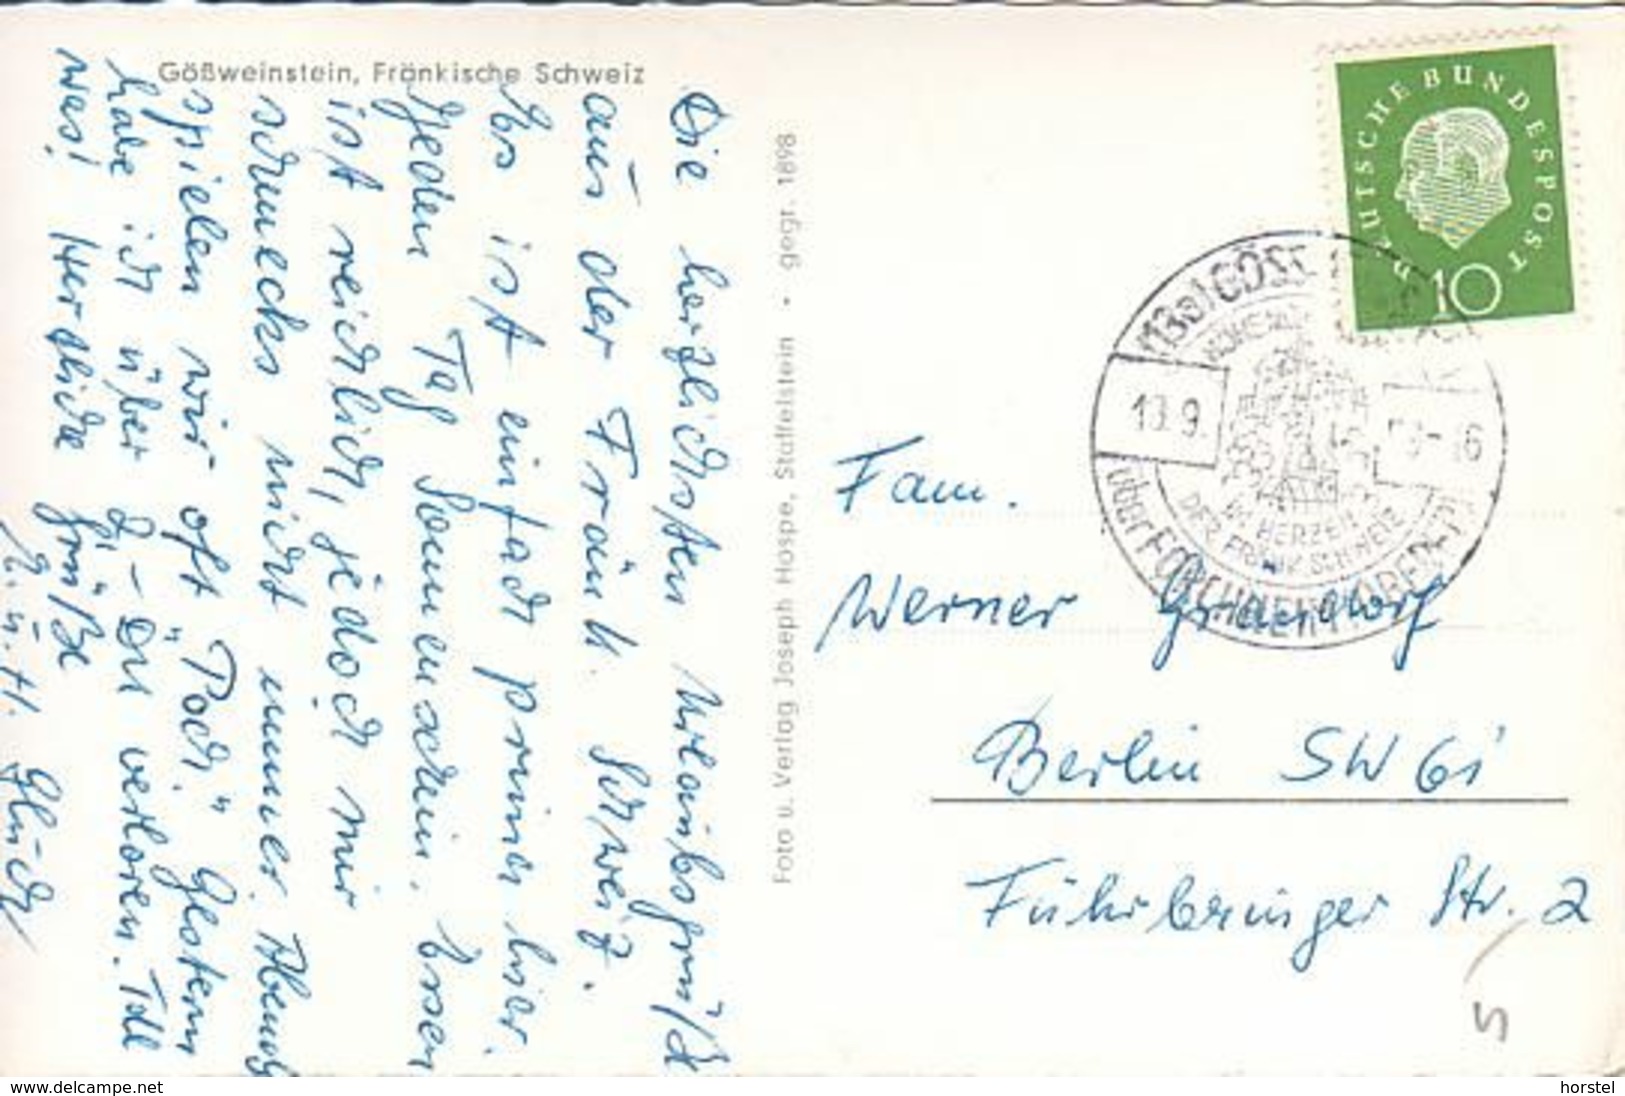 D-91327 Gößweinstein - Fränkische Schweiz - Nice Stamp - Forchheim